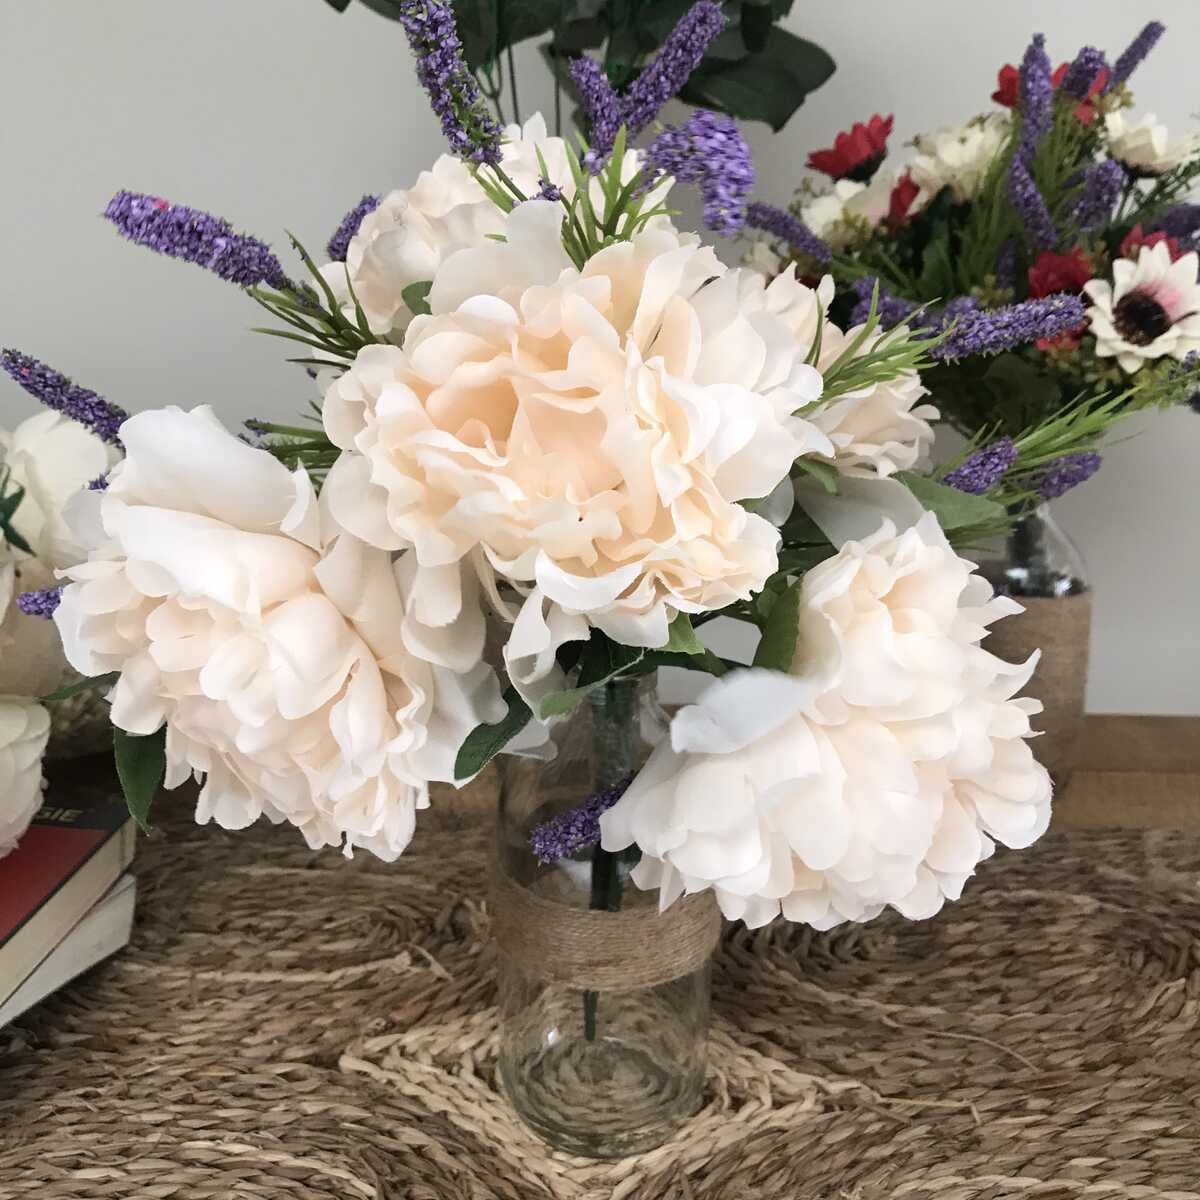 Bình Hoa Giả - Hoa Mẫu Đơn và Lavender Cổ điển - Hoa giả Loại 1 - Hoa Giả Để Bàn